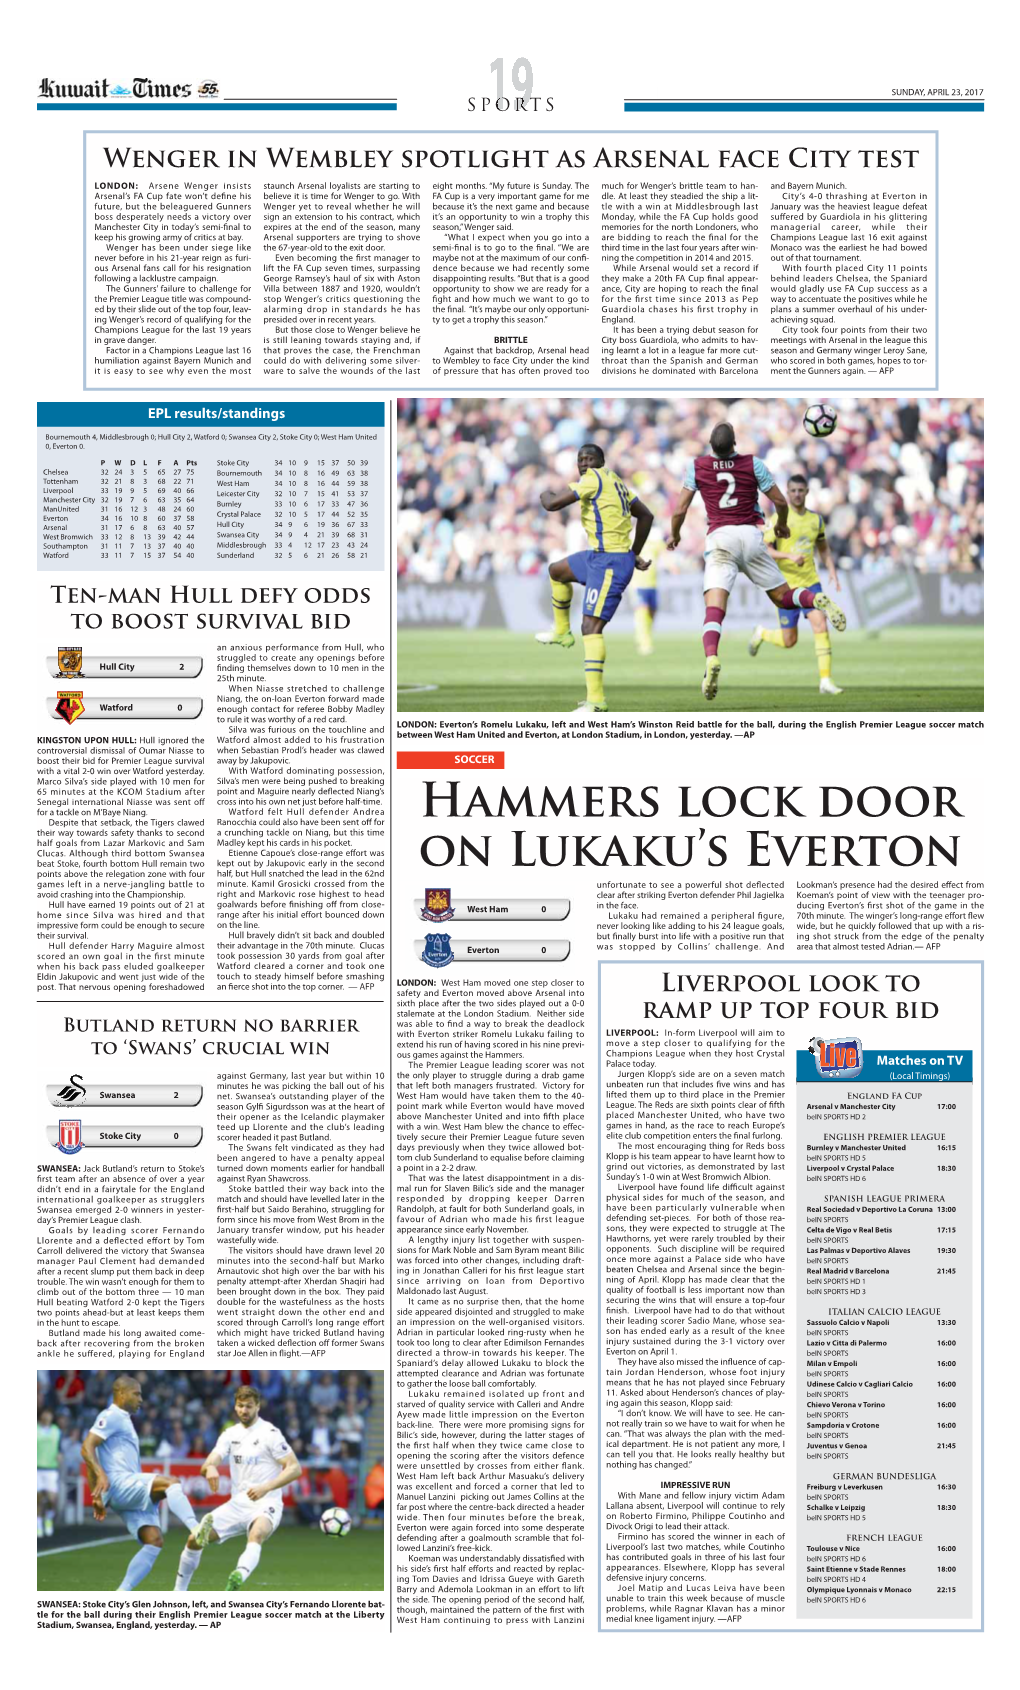 Hammers Lock Door on Lukaku's Everton